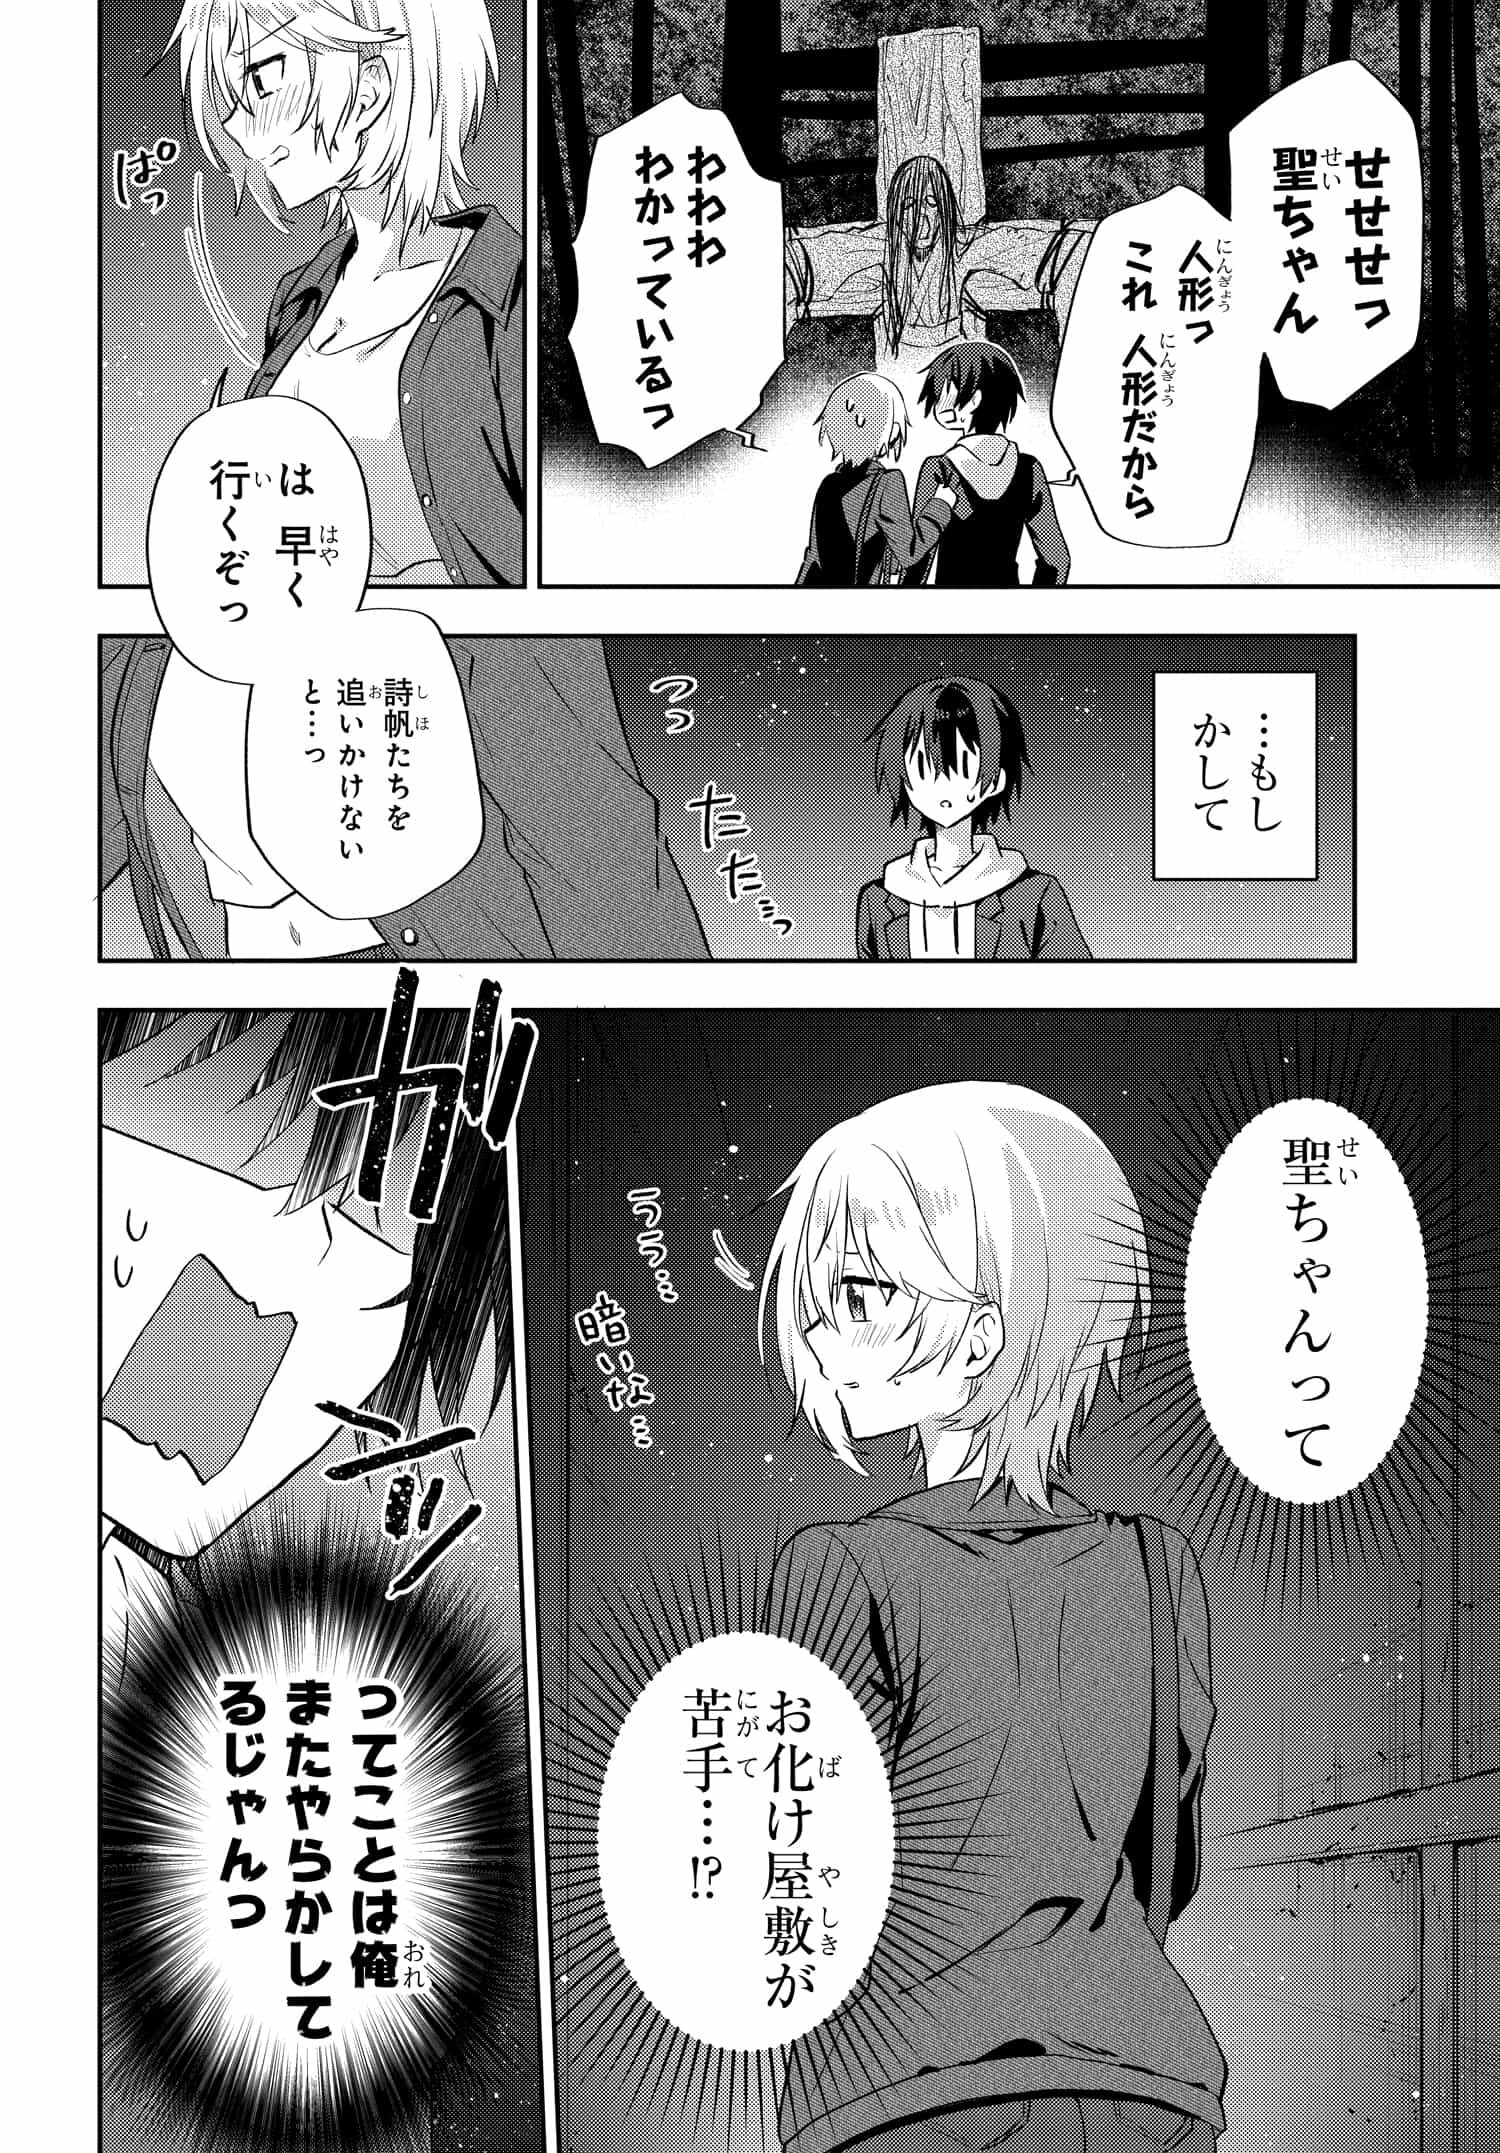 Romcom Manga ni Haitte Shimatta no de, Oshi no Make Heroine wo Zenryoku de Shiawase ni suru - Chapter 7.2 - Page 7